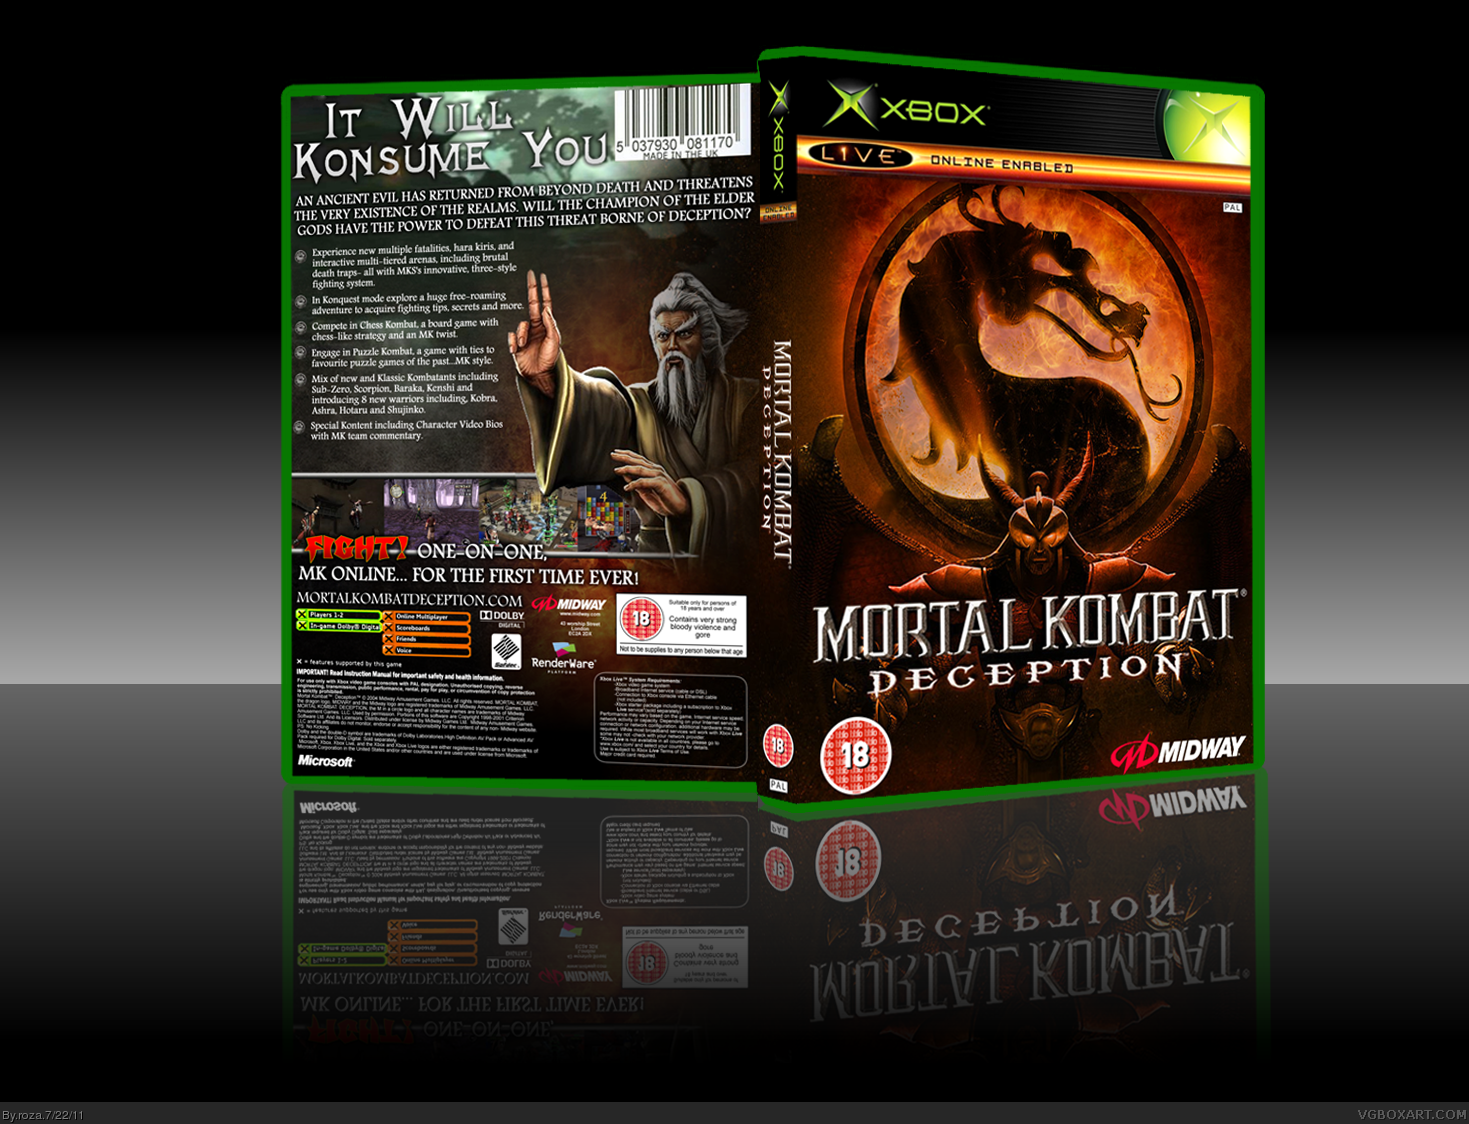 Mortal Kombat: Deception box cover